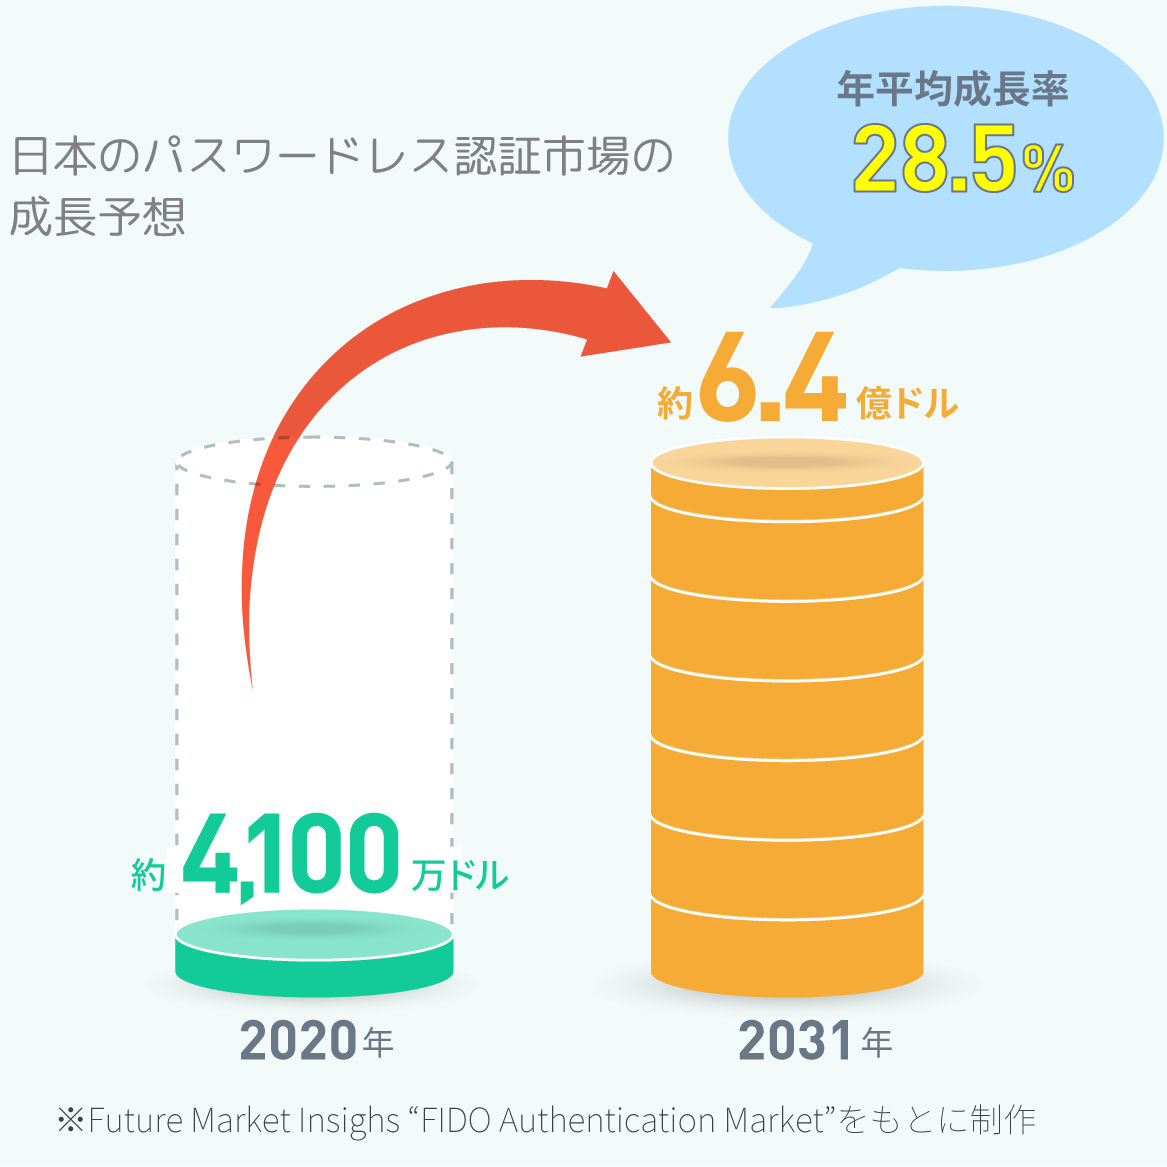 日本のパスワードレス認証市場の成長予想